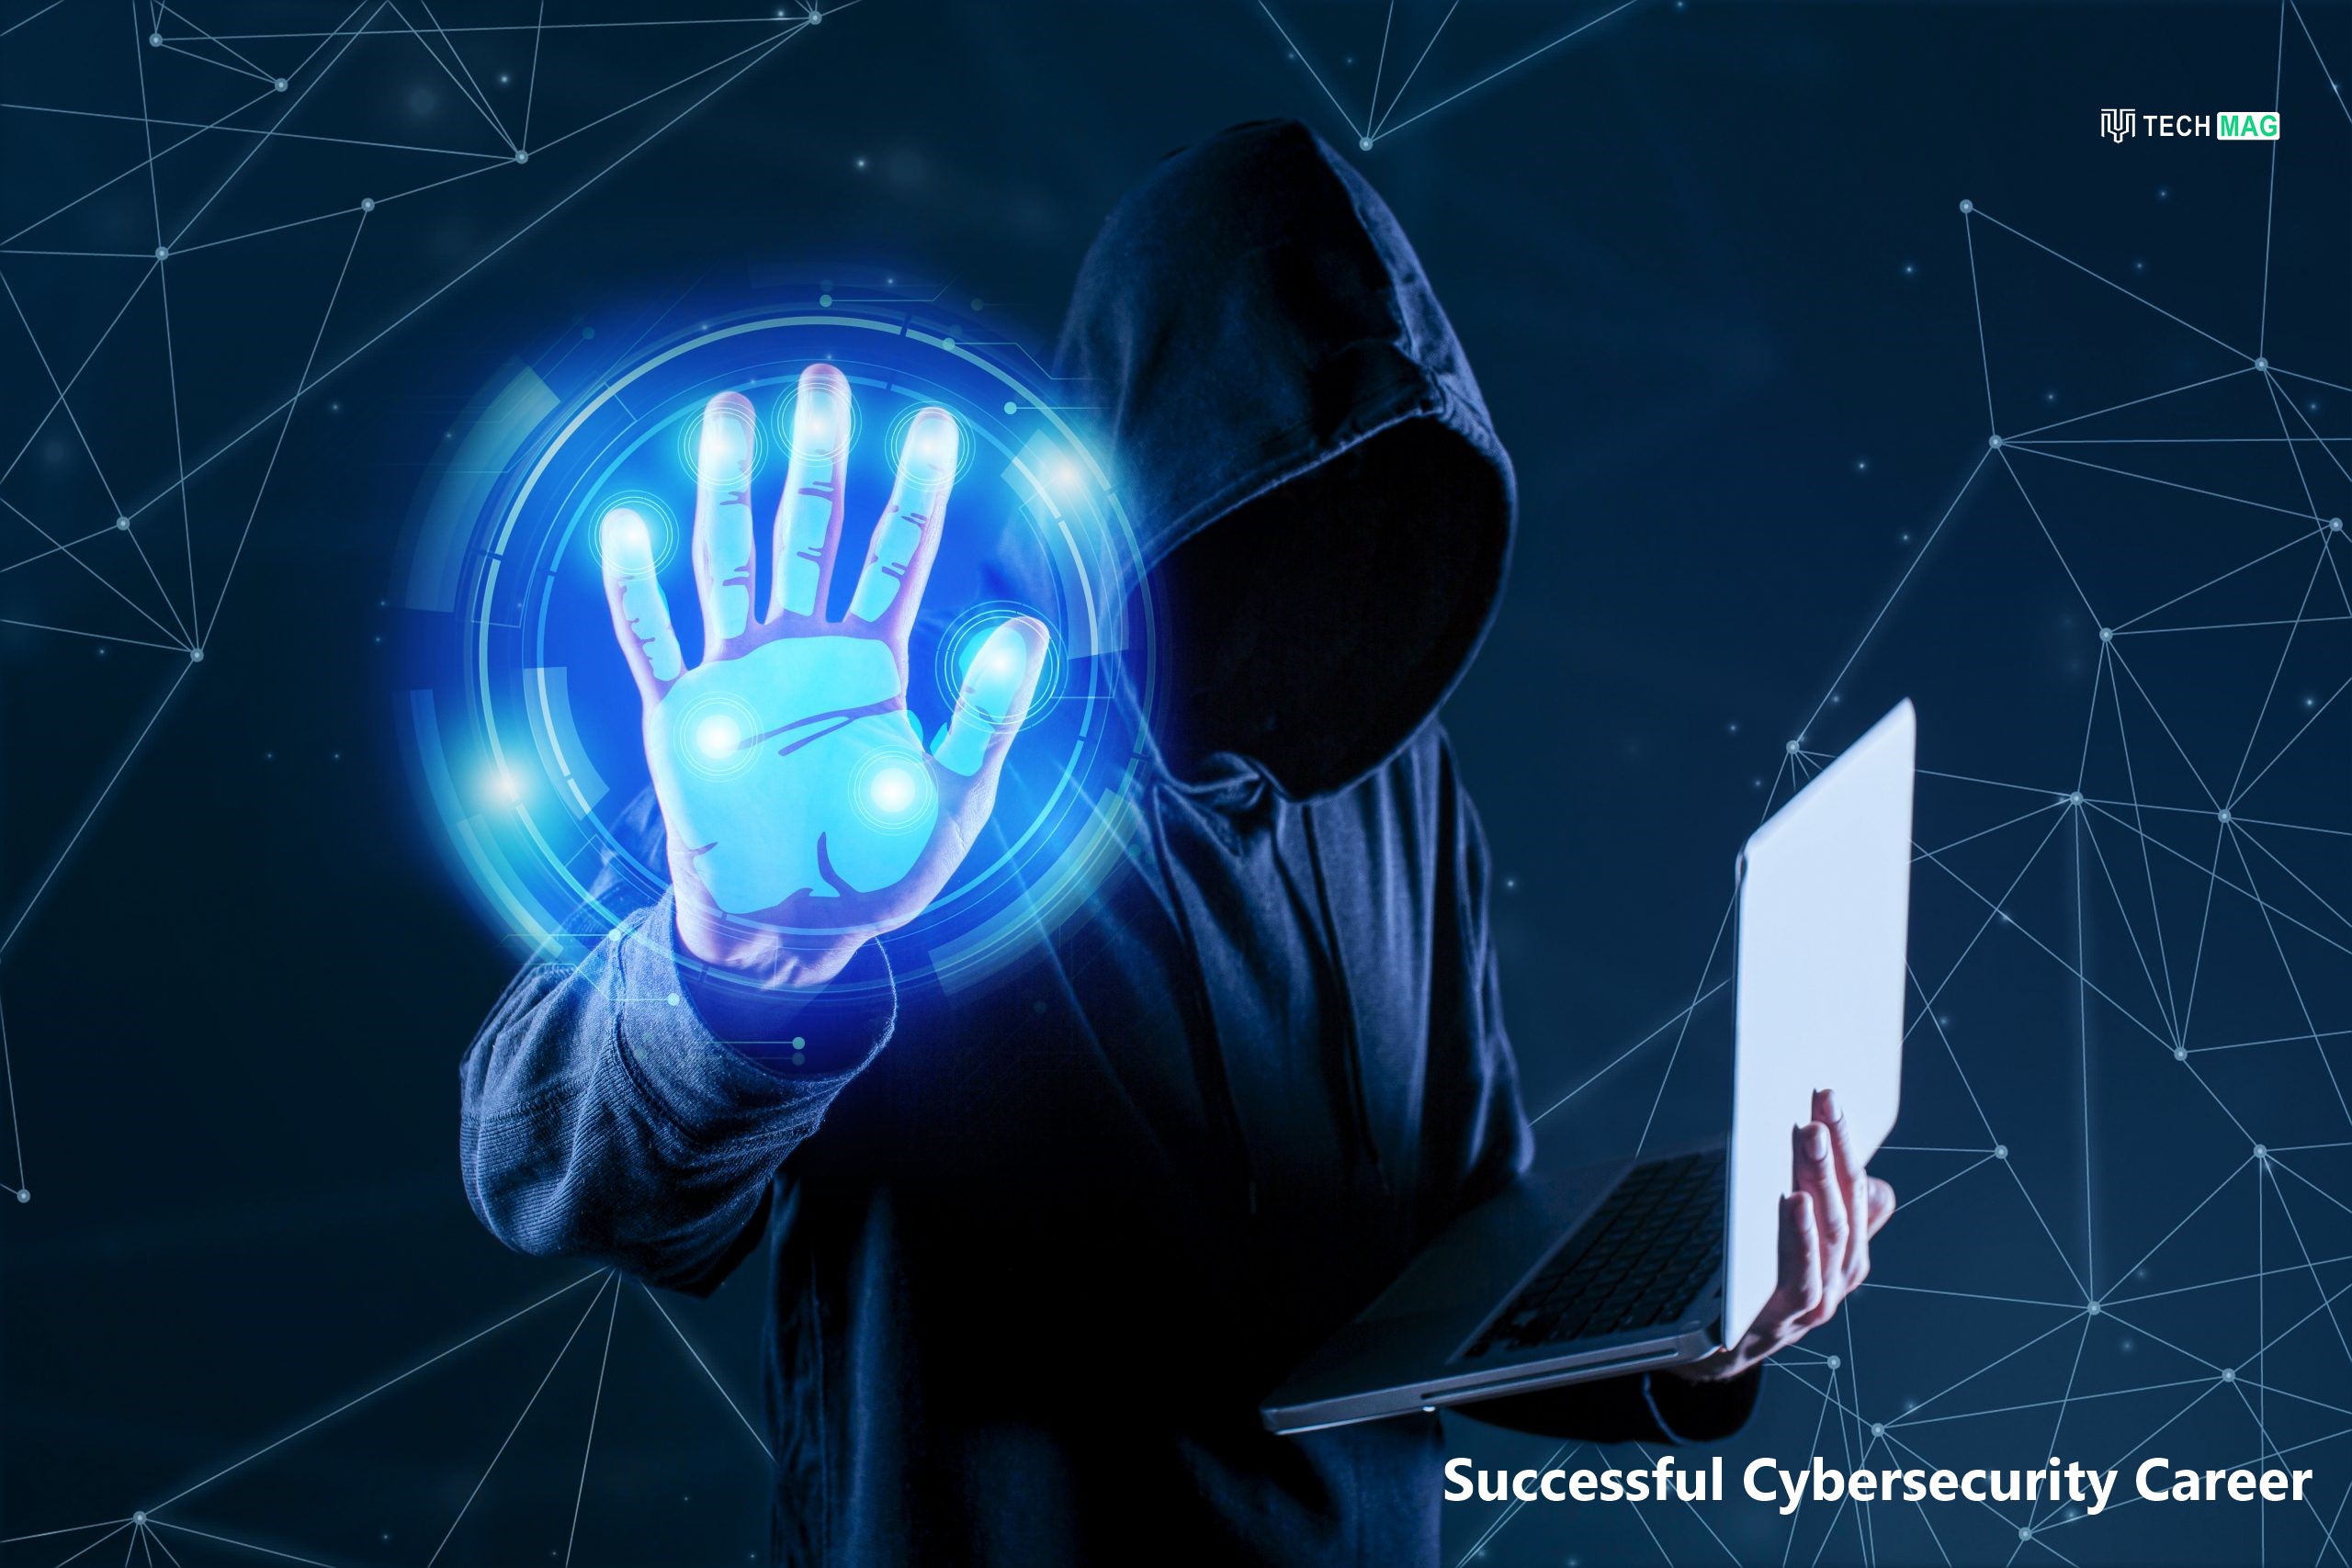 Successful Cybersecurity Career